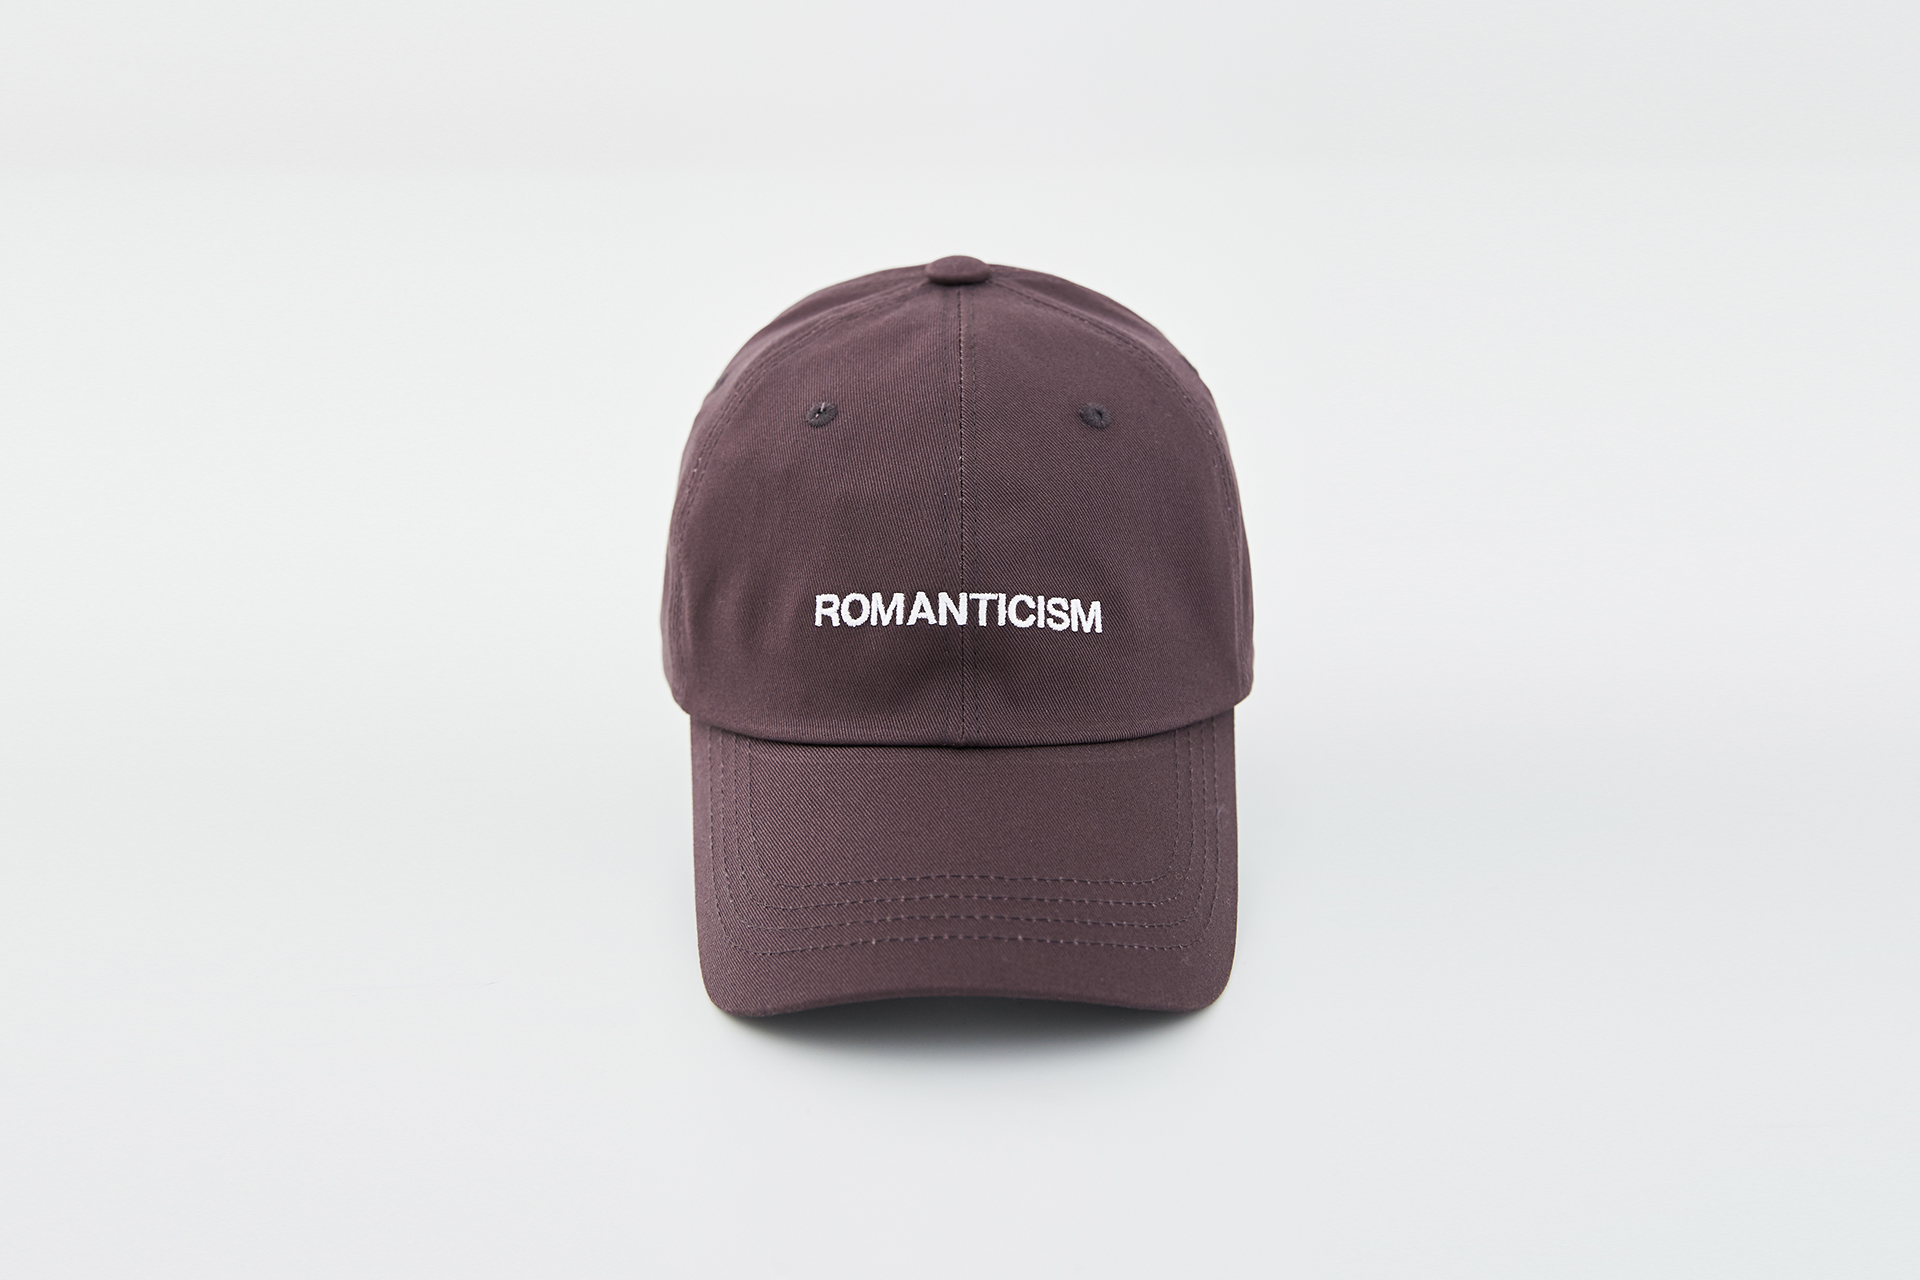 ROMANTICISM COTTON BALL CAP(DGR)